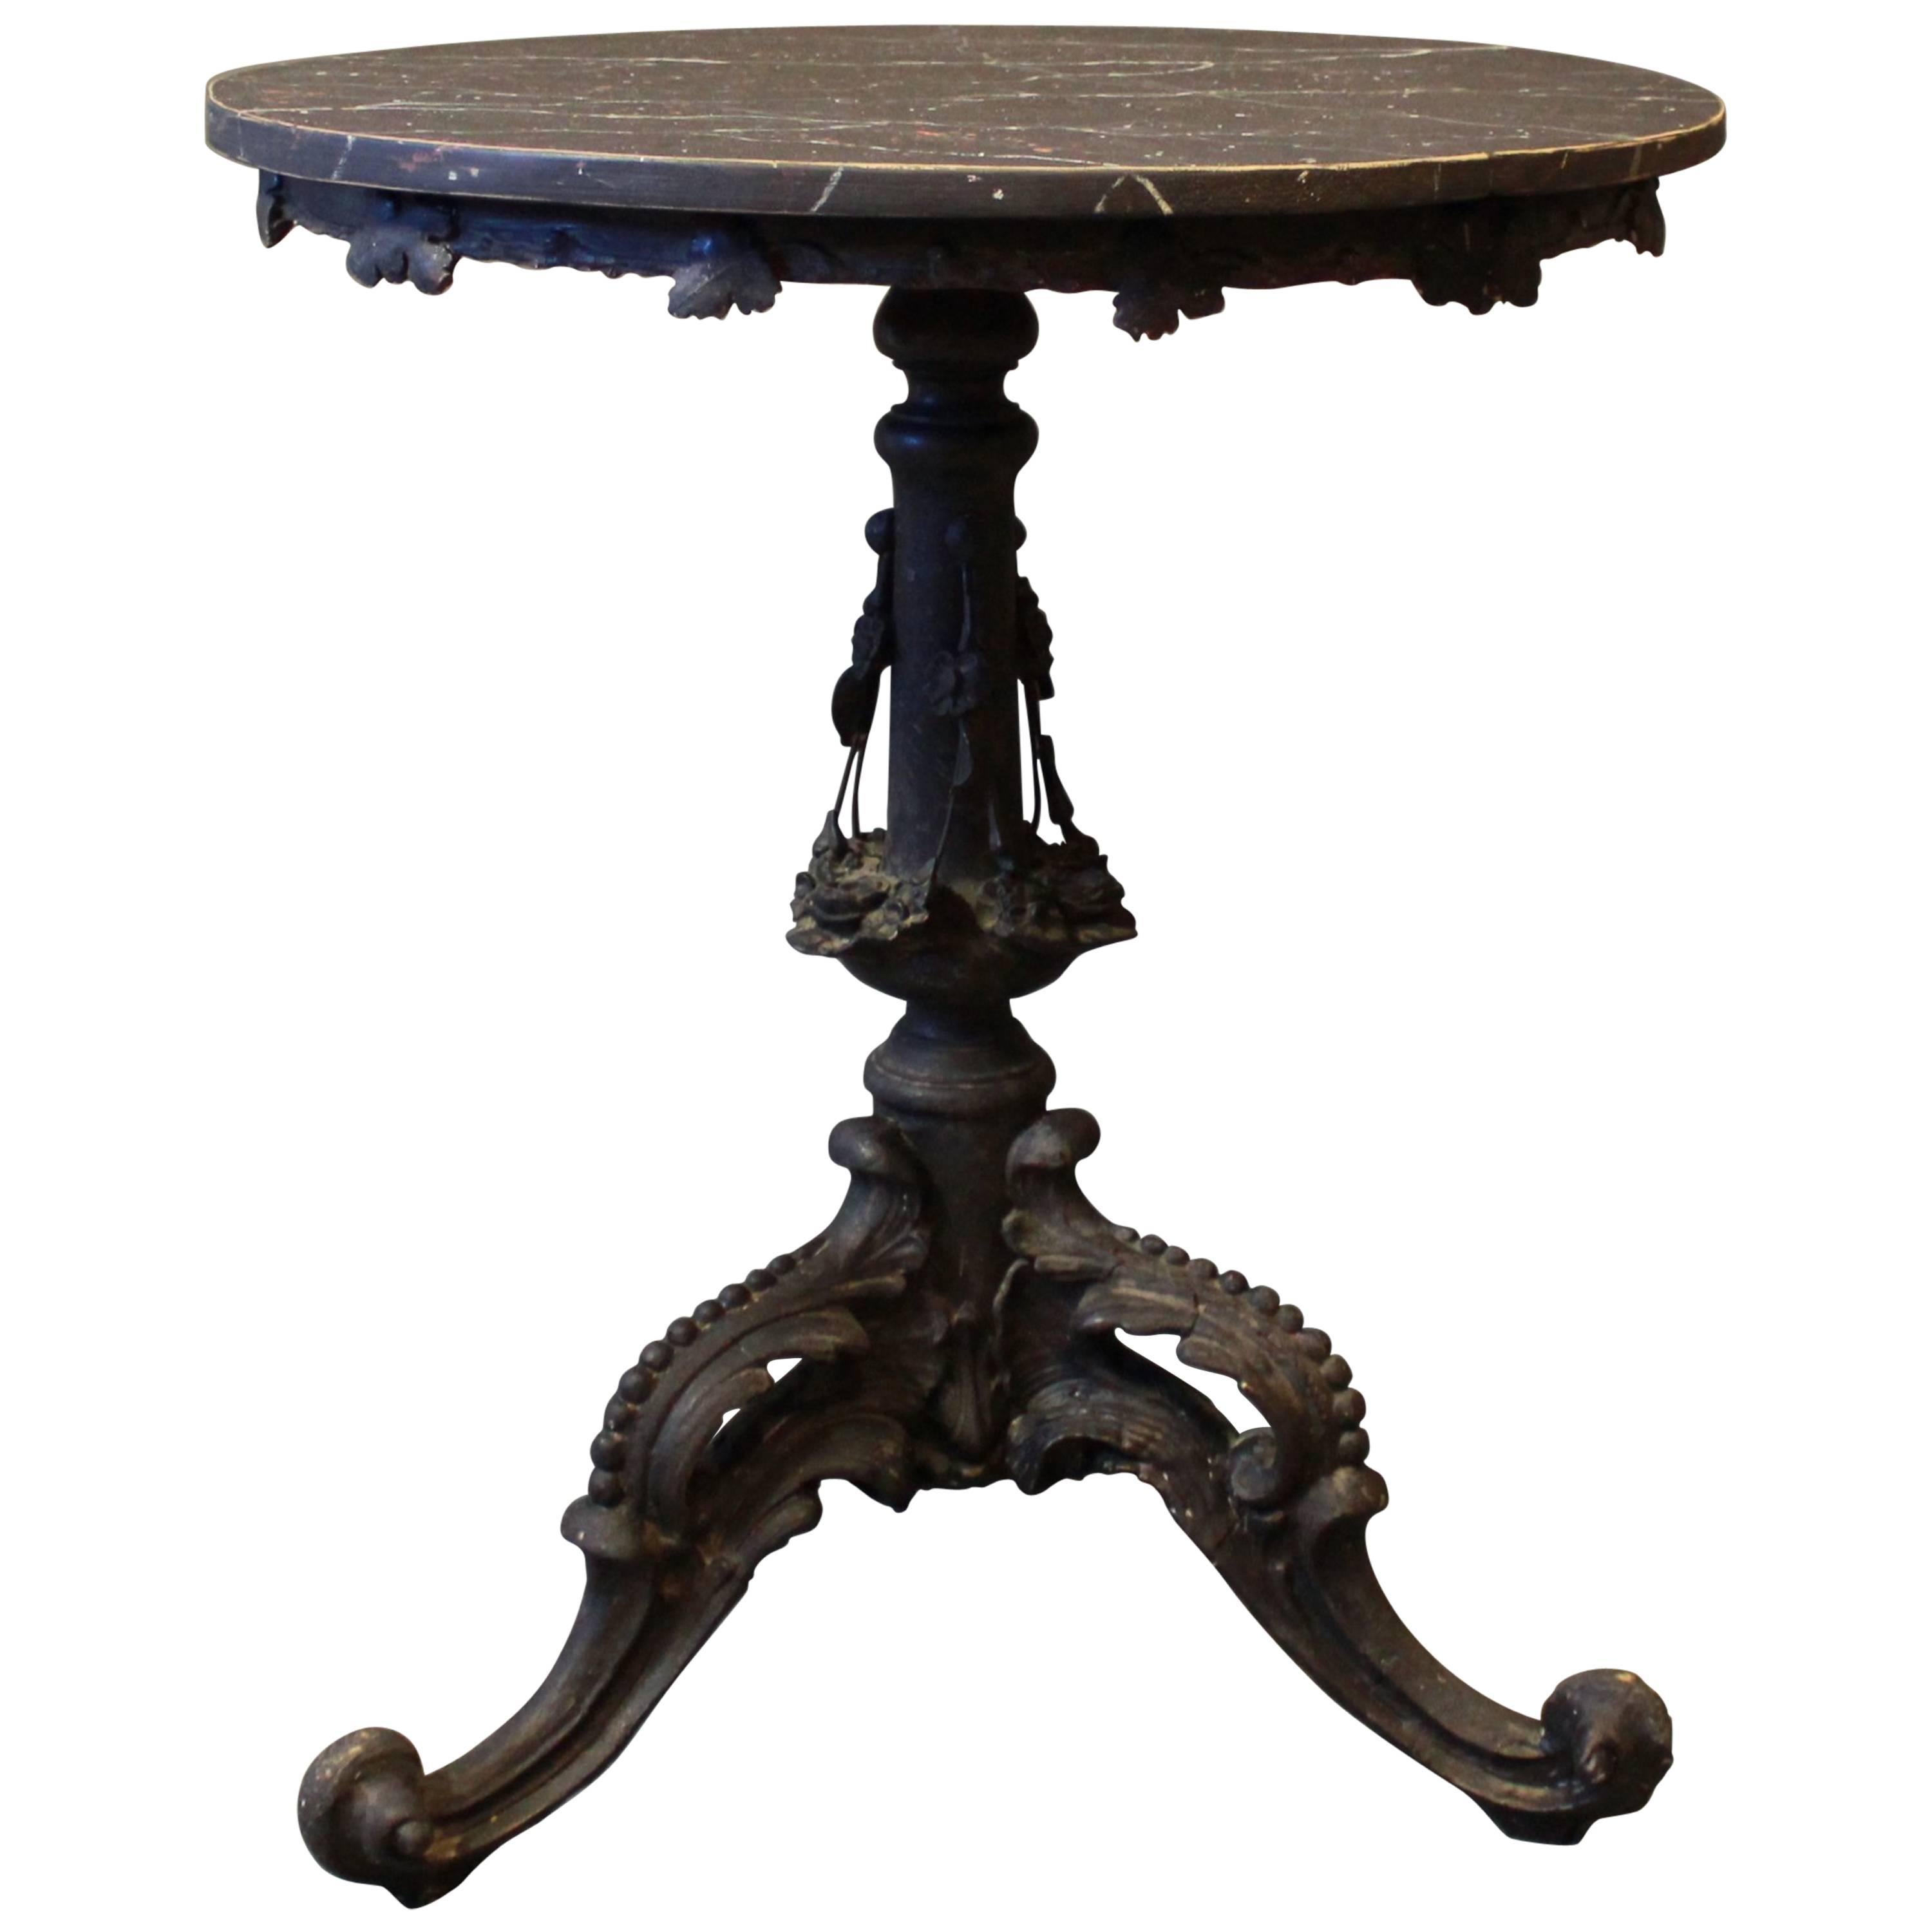 Table d'appoint ronde avec plateau de table en marbre noir, style gustavien, années 1880